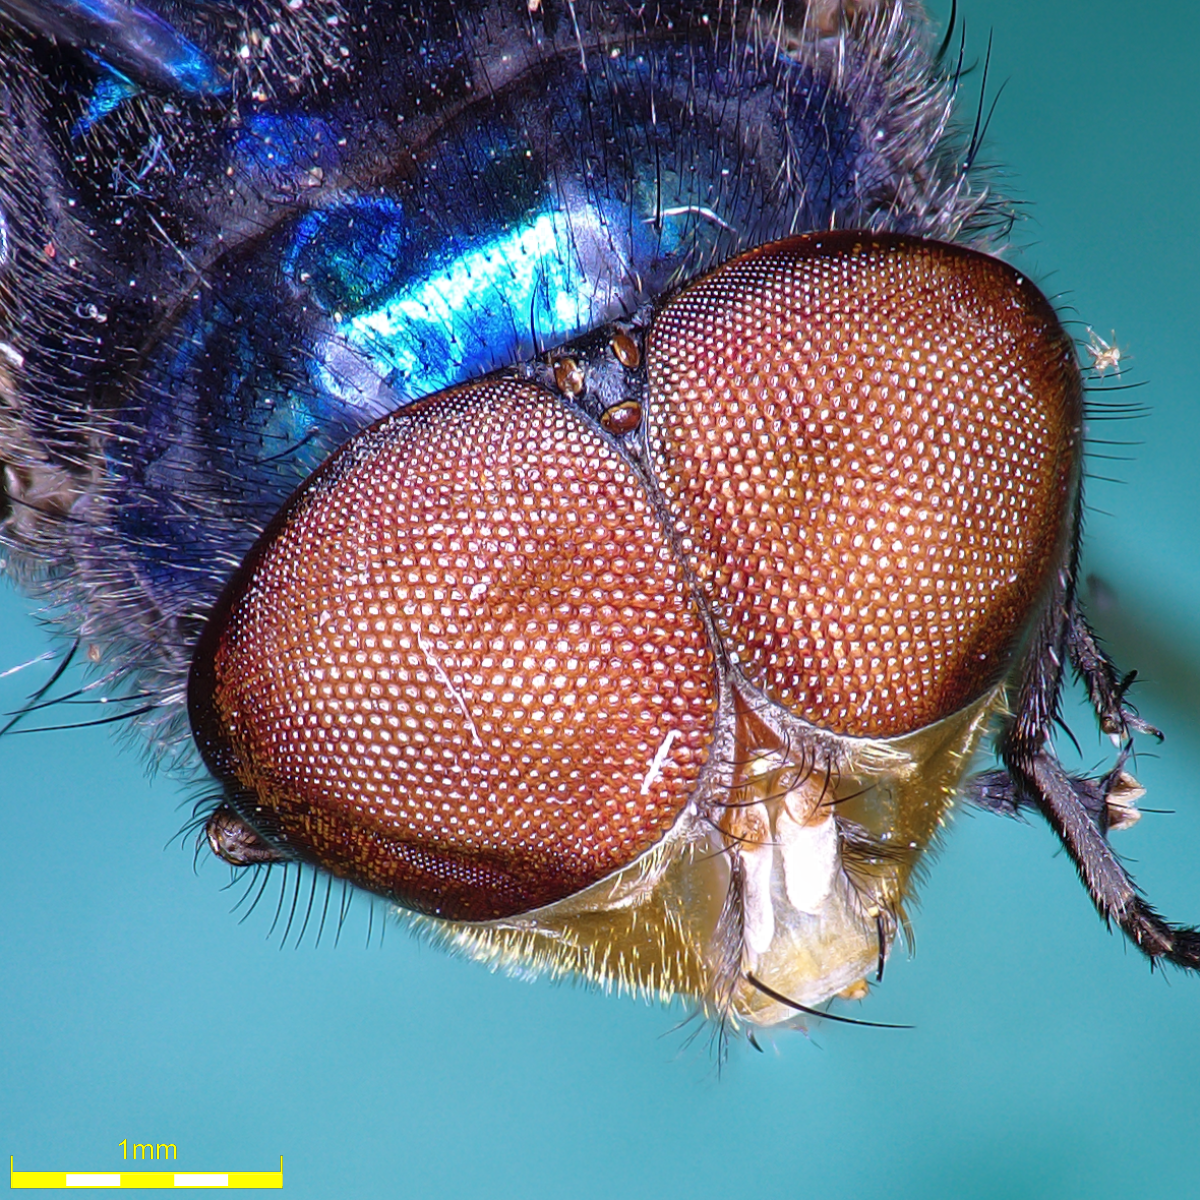 Měření charakteristických vlastností much pro účely lékařské entomologie